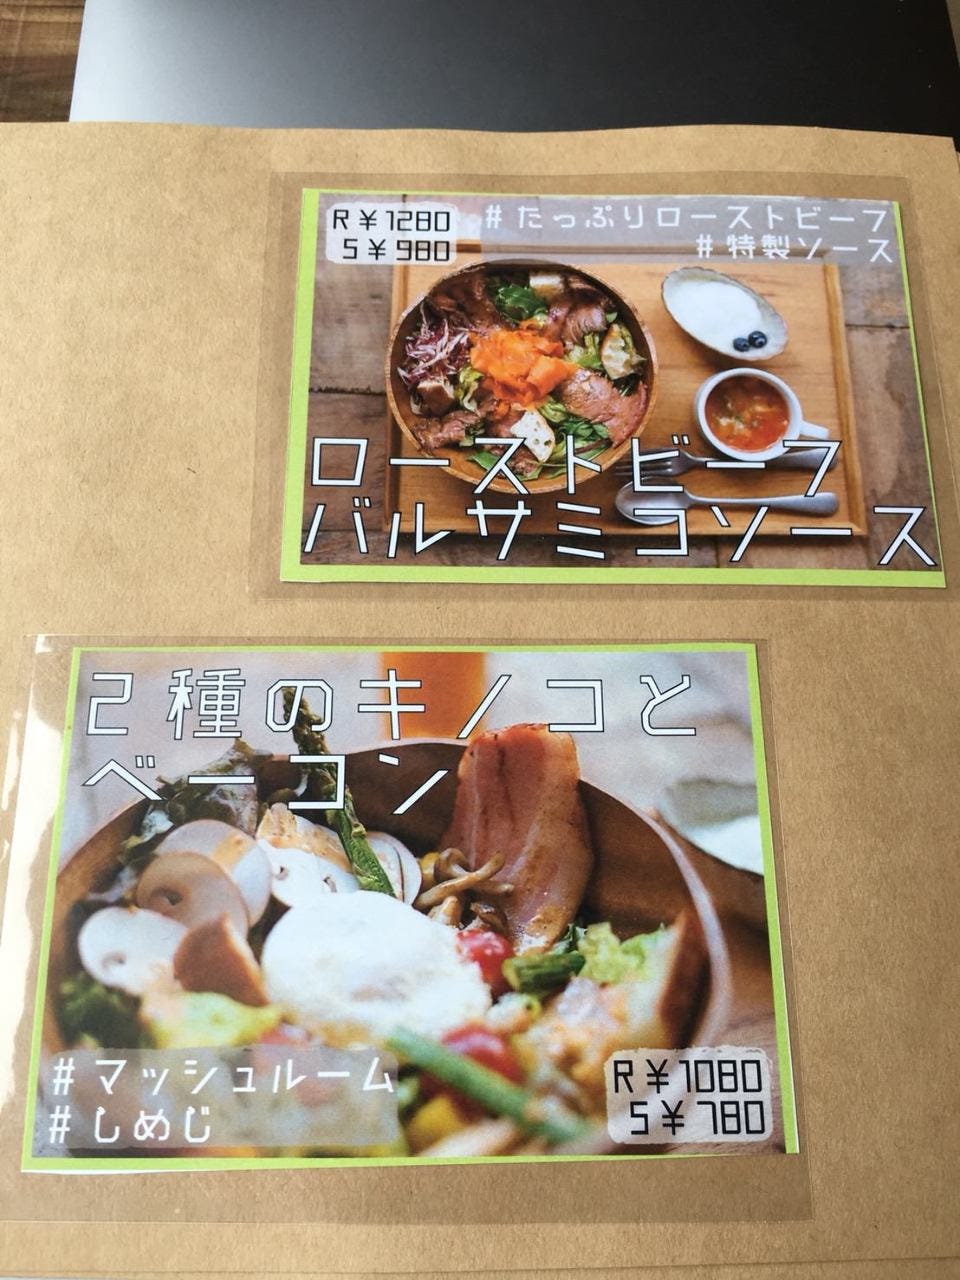 【5/1リニューアルOPEN】Cafe モニカ&アドリアーノ 町田店のURL1